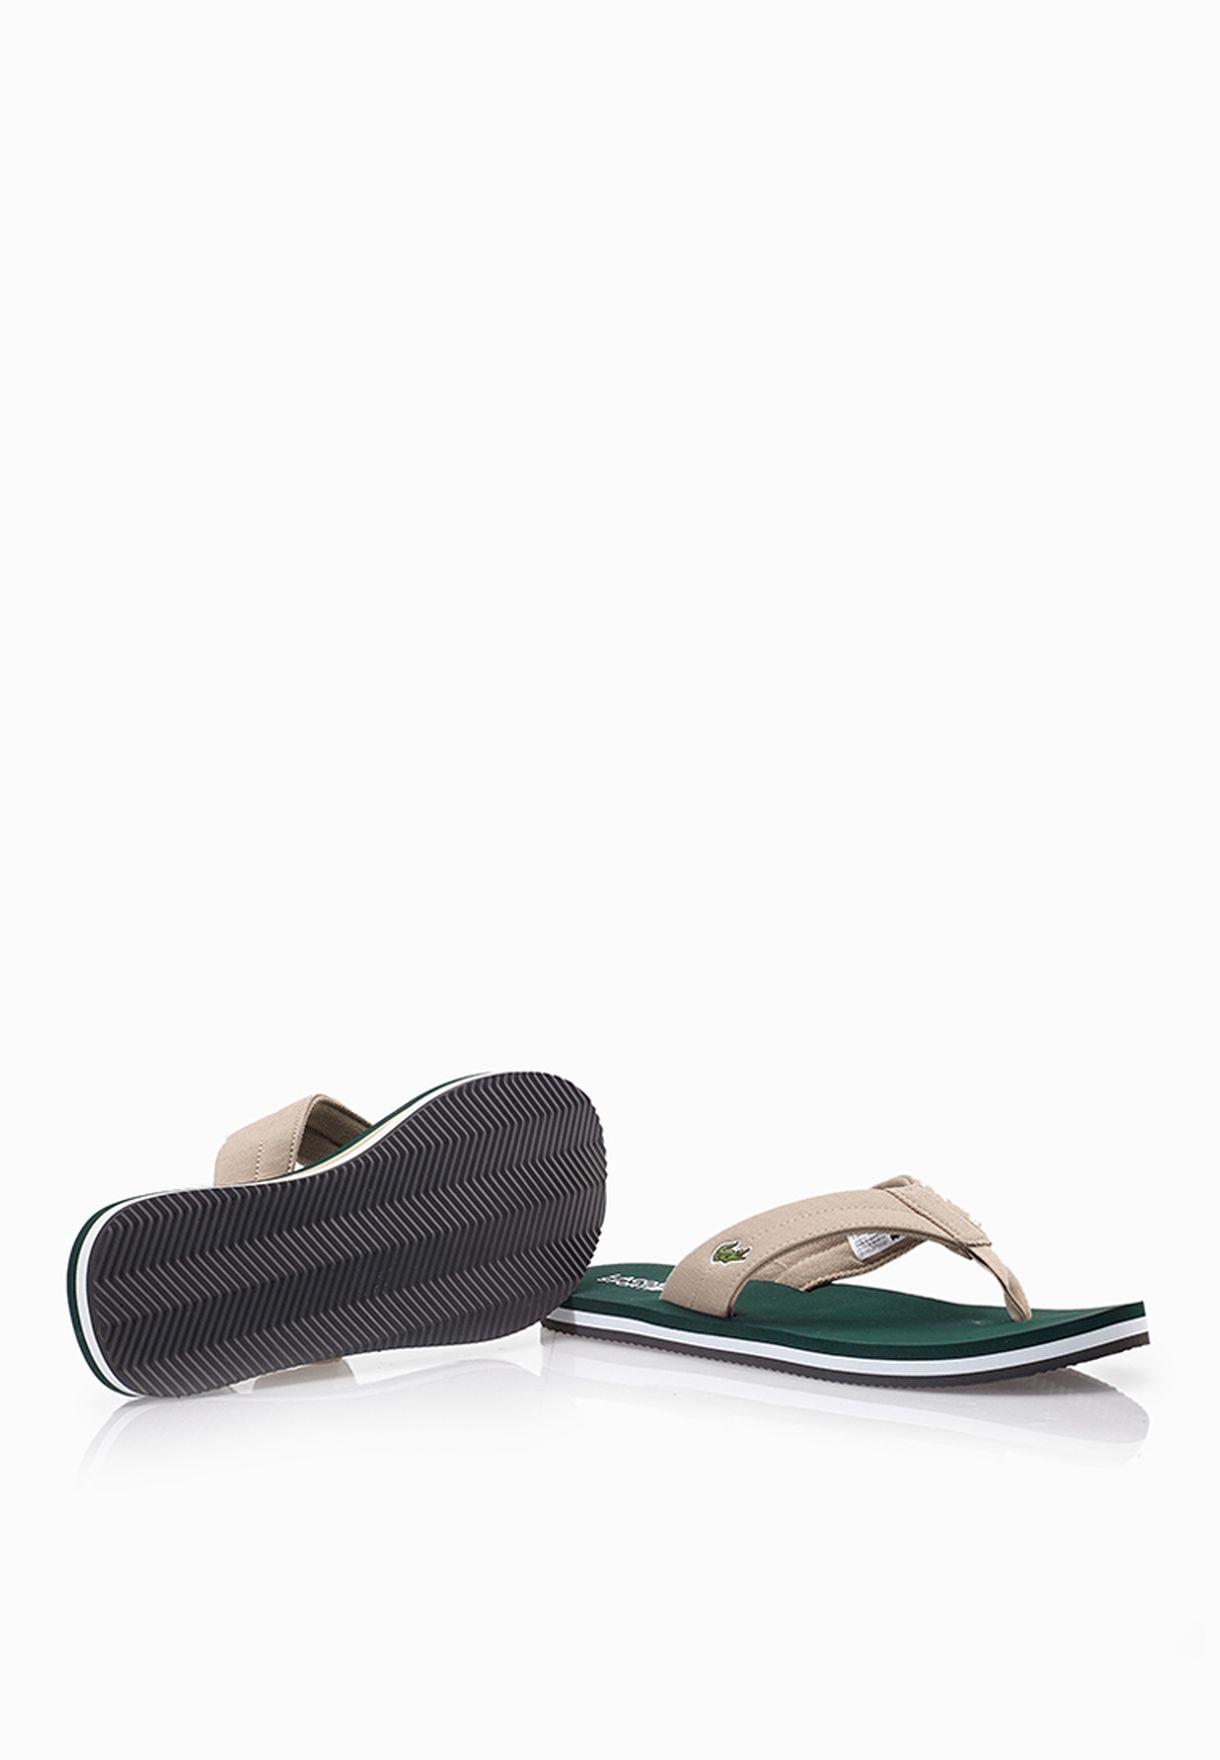 lacoste green flip flops